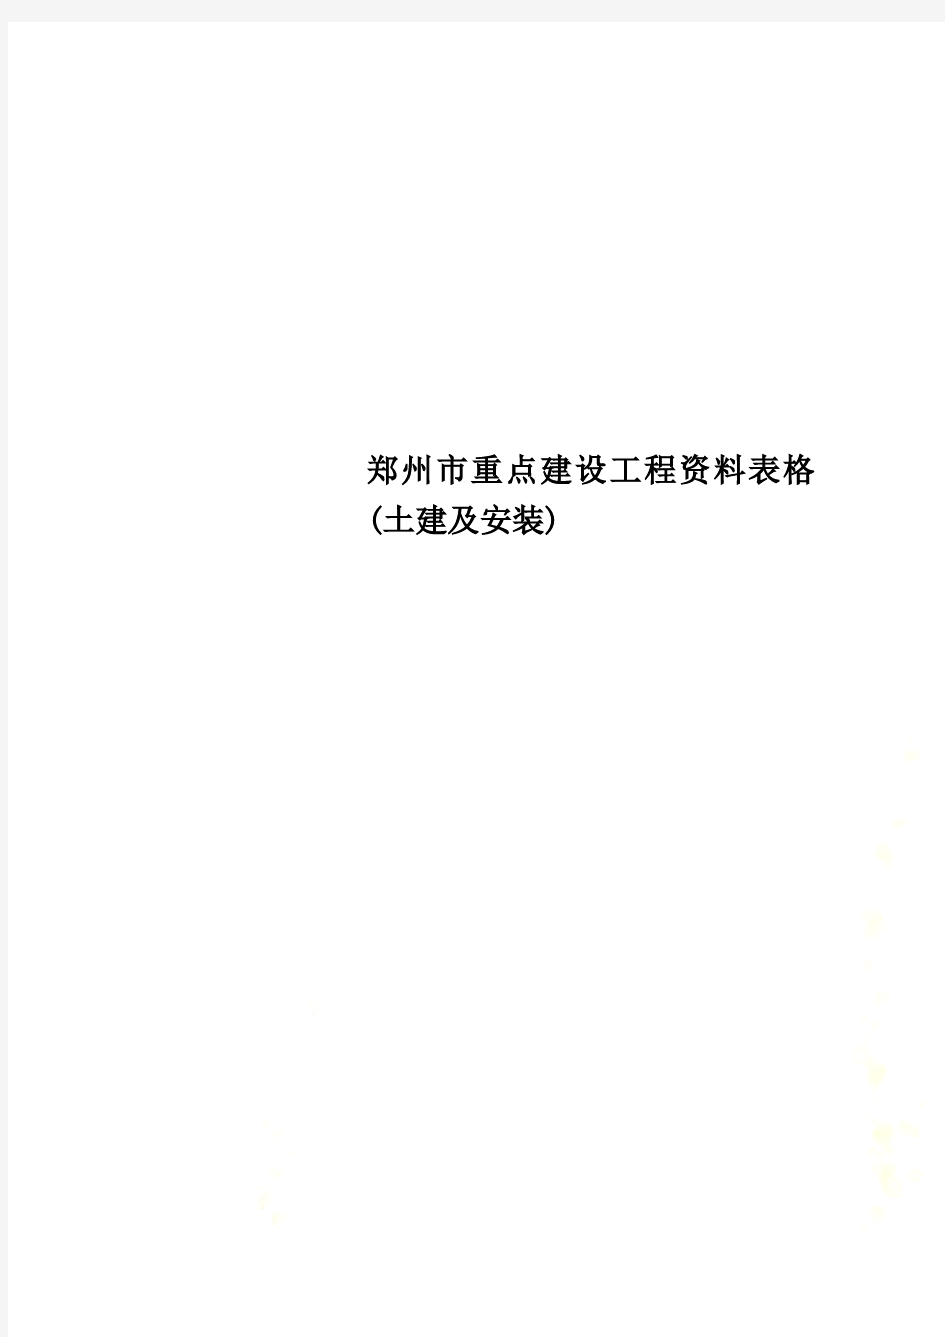 郑州市重点建设工程资料表格(土建及安装)